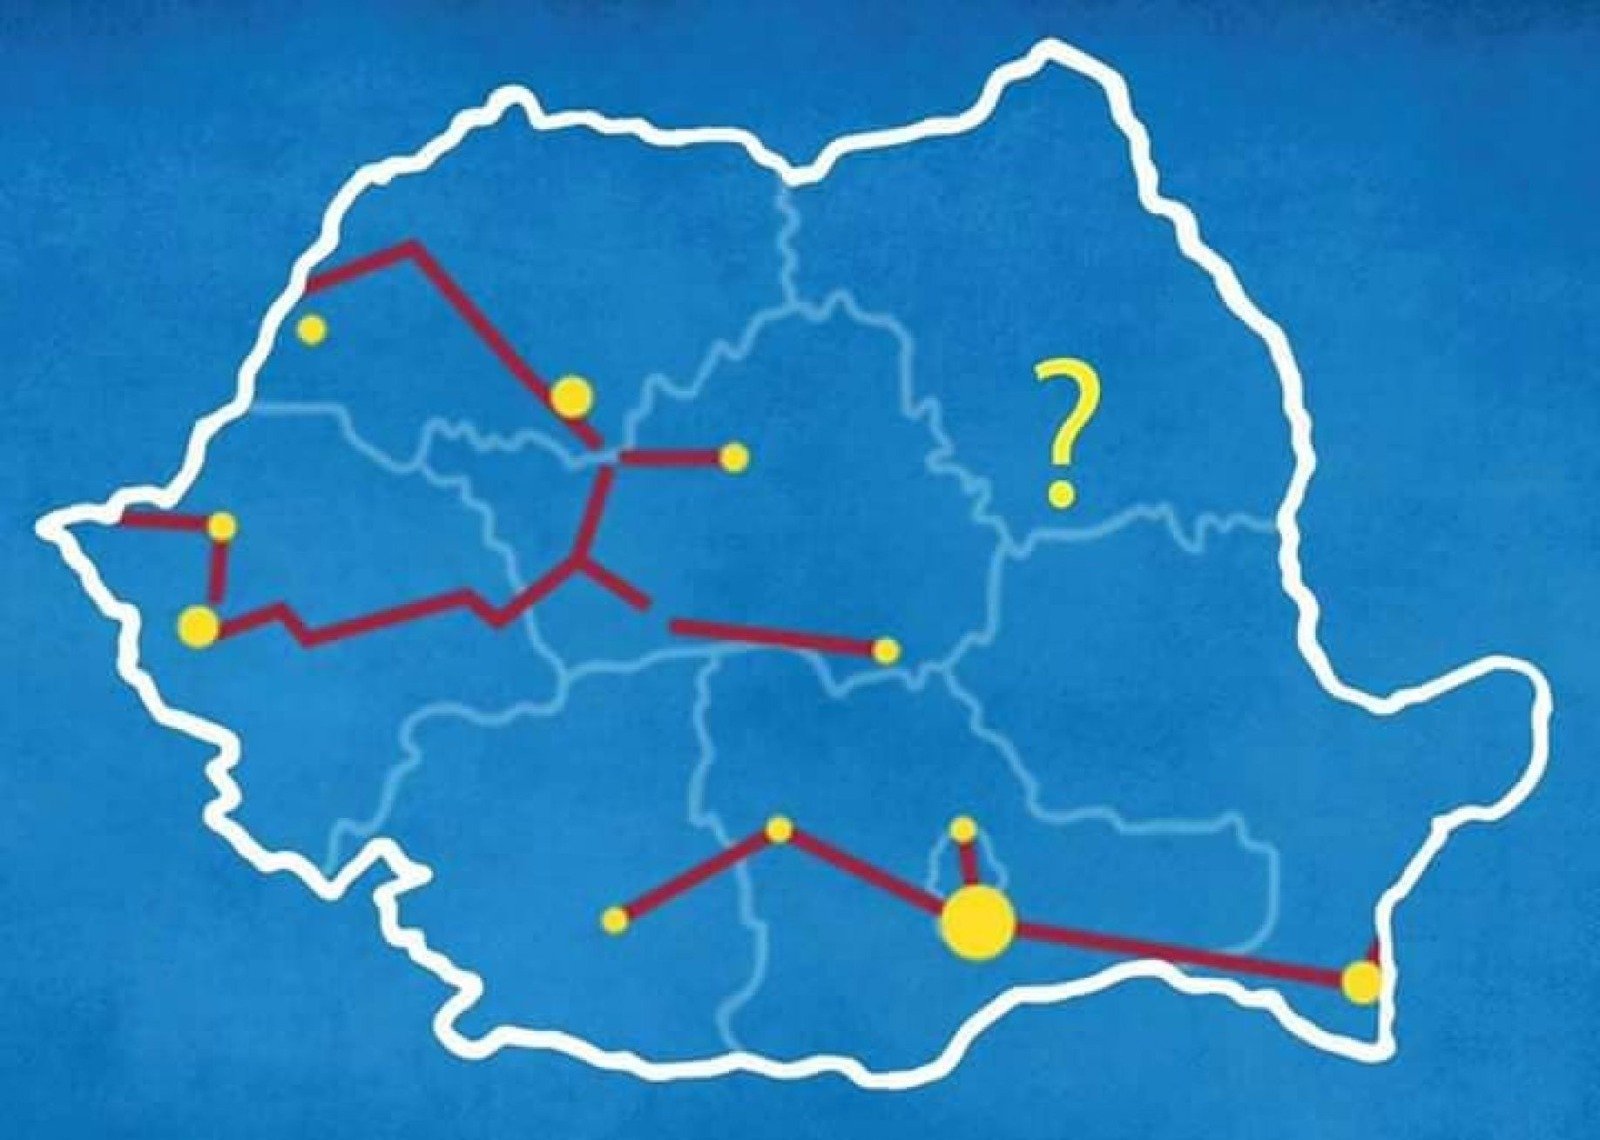  Premierul Cîțu a venit degeaba la Iași! Vorbe goale despre proiecte iluzorii, niciun cuvânt însă despre autostrada A8! (P)